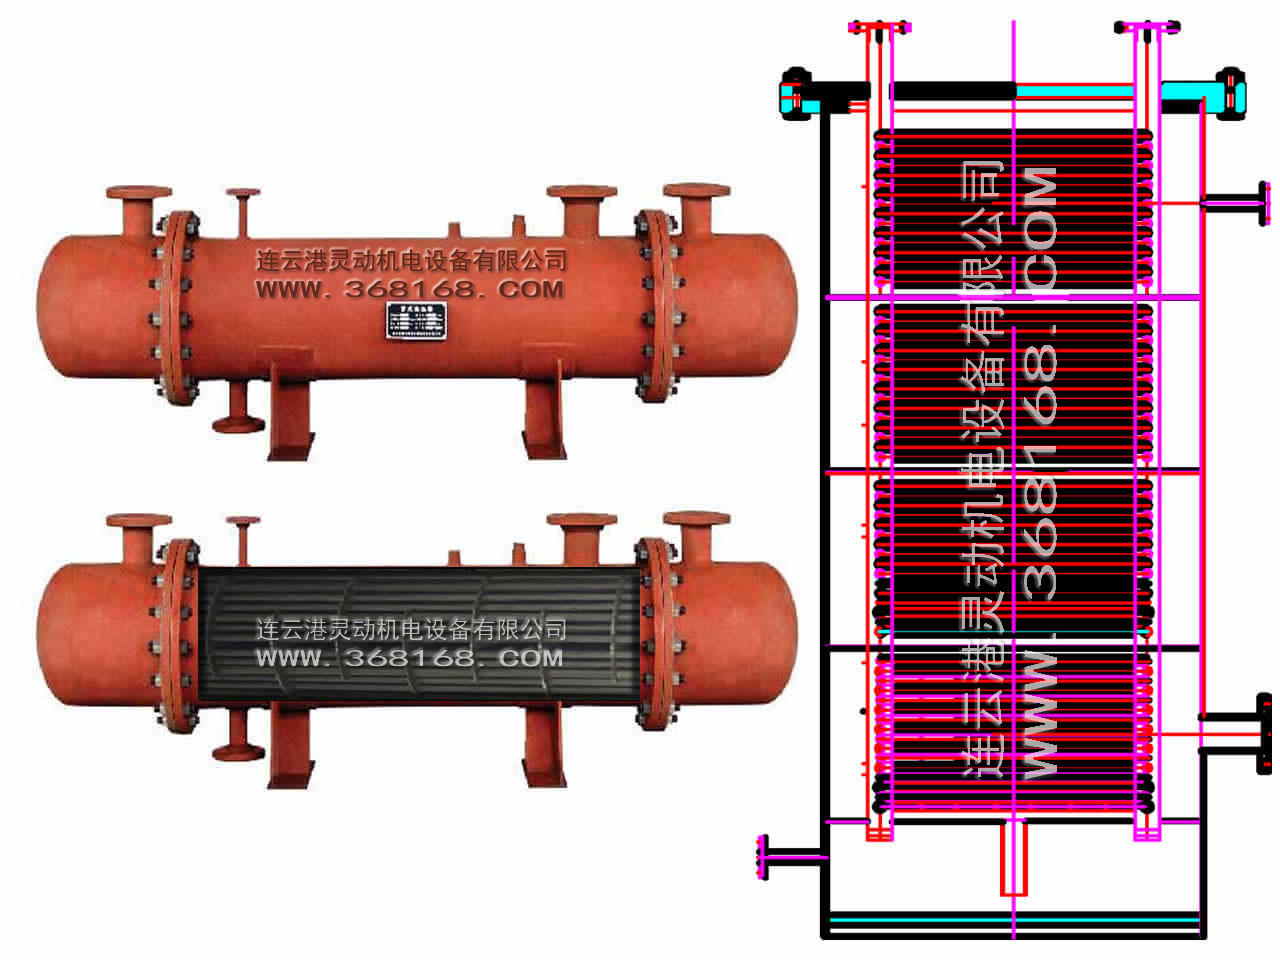 连云港灵动排污冷却器 排污冷却器生产厂家 排污冷却器 冷却器